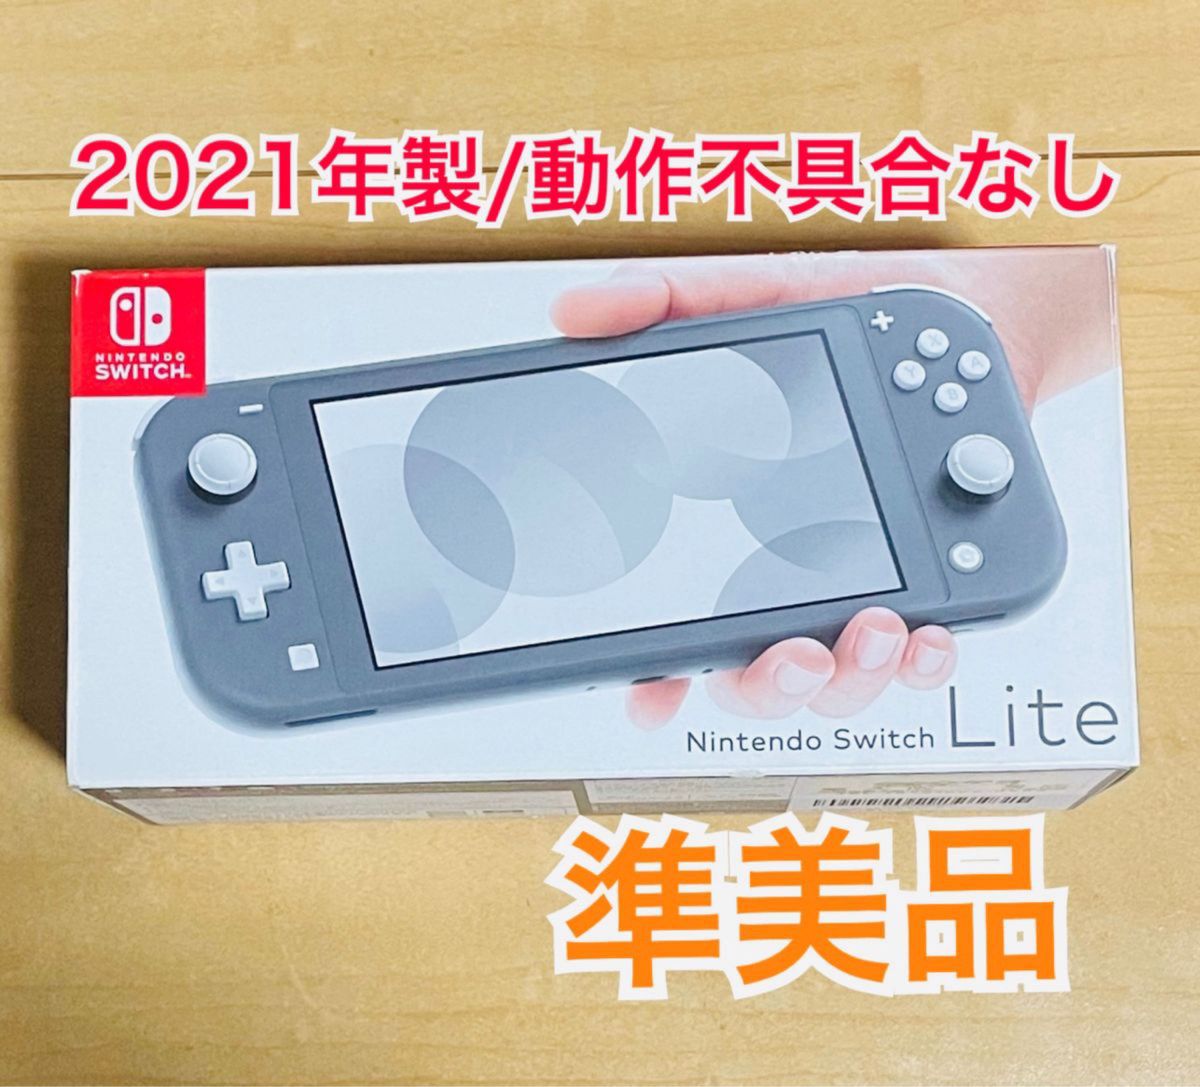 Nintendo Switch Lite ニンテンドースイッチライト 本体 グレー 2021年